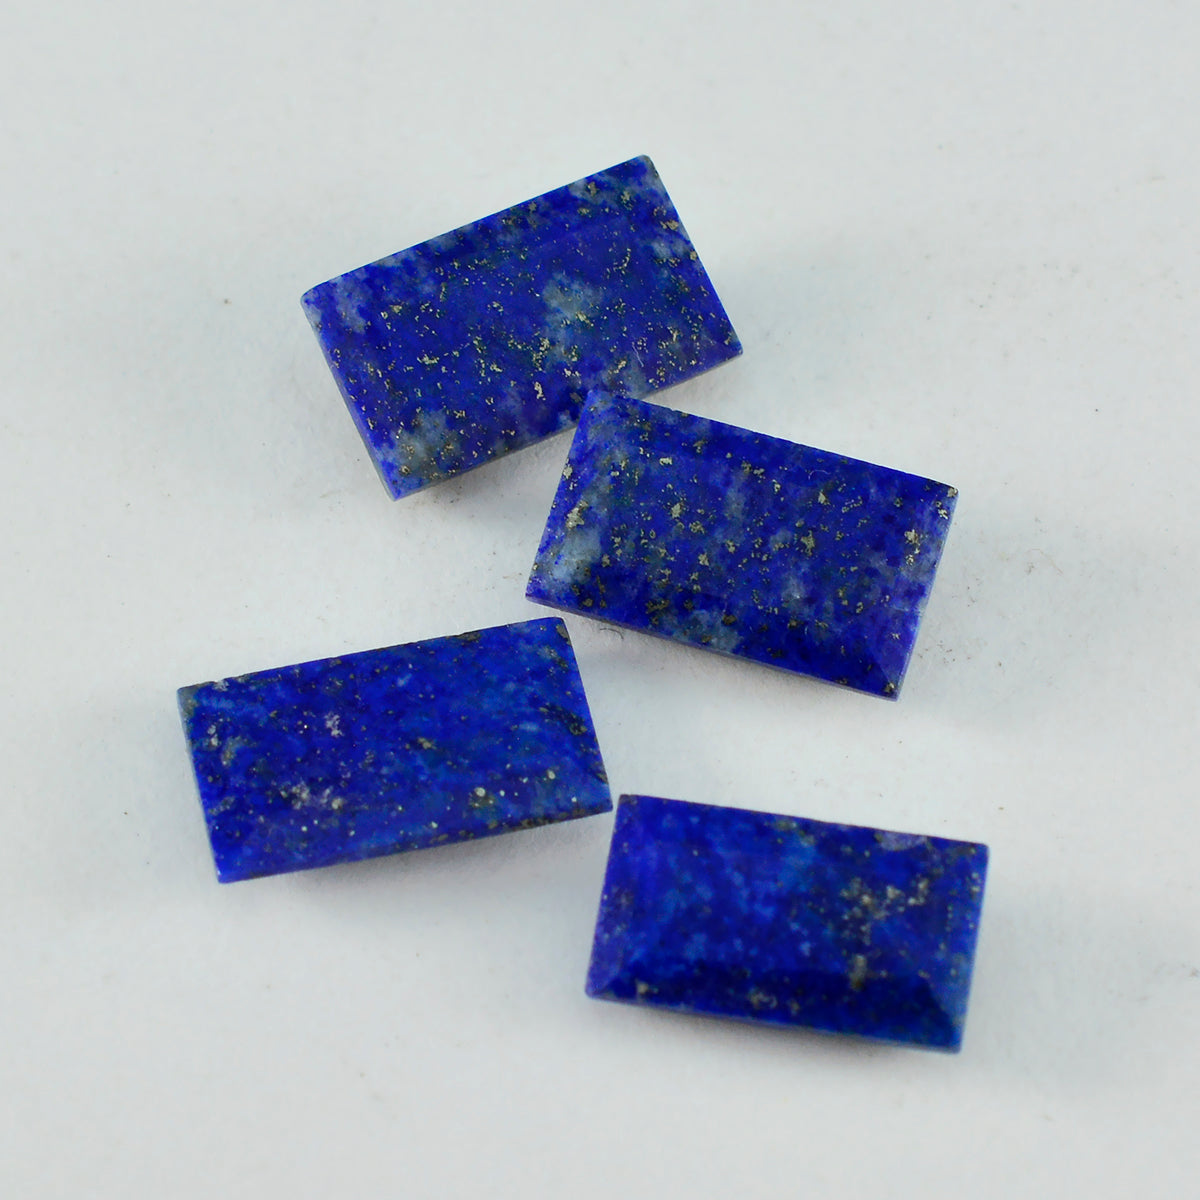 Riyogems 1 pièce de lapis-lazuli bleu naturel à facettes 6x12mm en forme de baguette, pierres précieuses de qualité surprenantes